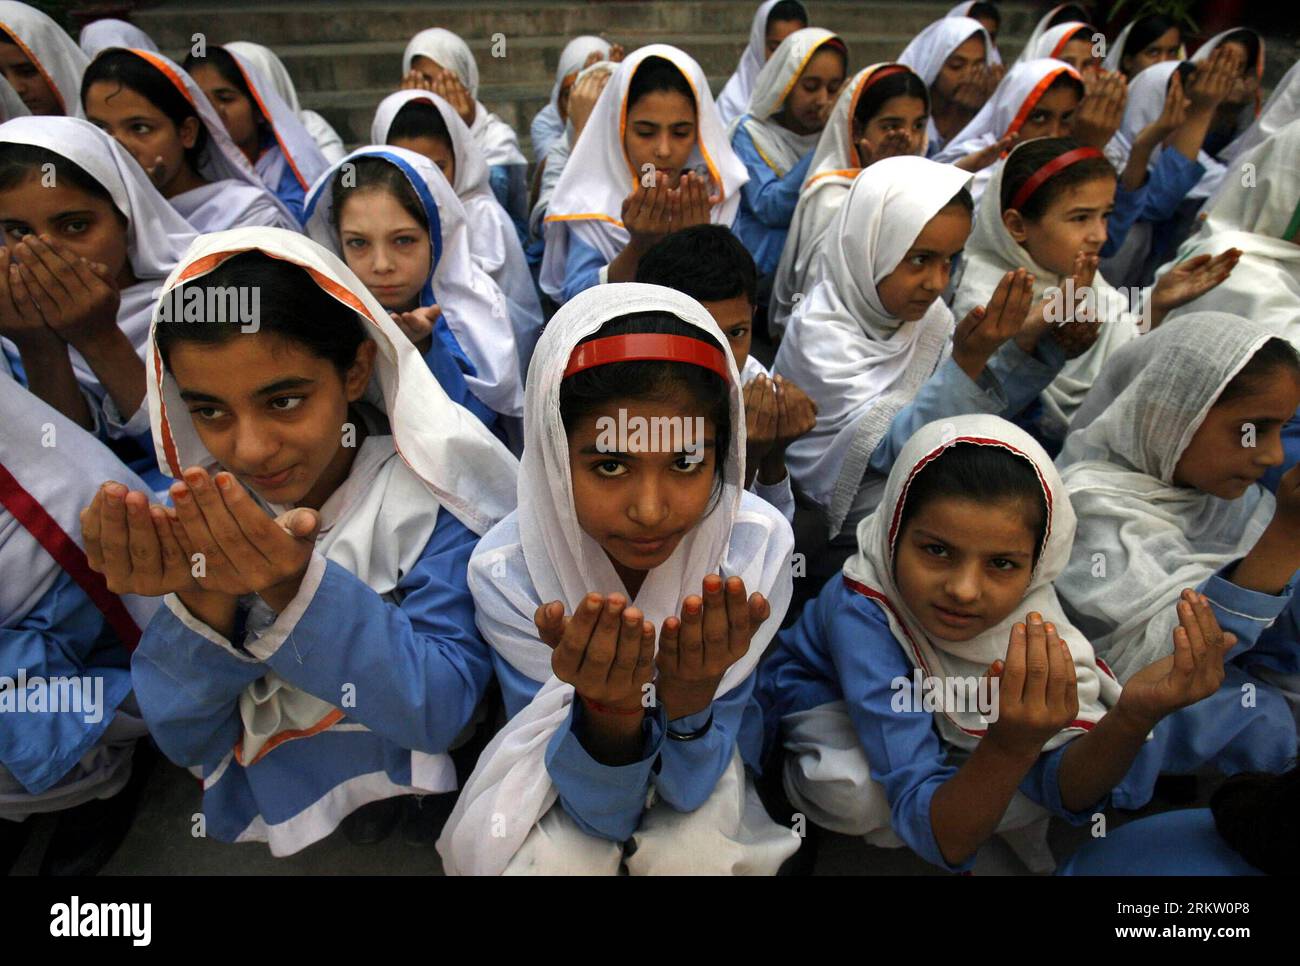 Bildnummer : 58583711 Datum : 12.10.2012 Copyright : imago/Xinhua (121012) -- PESAHWAR, 12 oct. 2012 (Xinhua) -- des étudiants pakistanais prient pour la récupération de Malala Yousafzai, militante des droits des enfants de 14 ans, qui a reçu une balle dans la tête lors d'une tentative d'assassinat des talibans, à Peshawar, au nord-ouest du Pakistan, le 12 octobre 2012. Les Pakistanais dans les mosquées à travers le pays ont prié vendredi pour le rétablissement de Malala, les médecins ont déclaré que les deux prochains jours étaient critiques. (Xinhua/Umar Qayyum) PAKISTAN-PESAHWAR-CHILDREN-ACTIVIST-PRAY PUBLICATIONxNOTxINxCHN Politik Gesellschaft Glaube religion Gebet Aktivistin Kinderrechte Banque D'Images